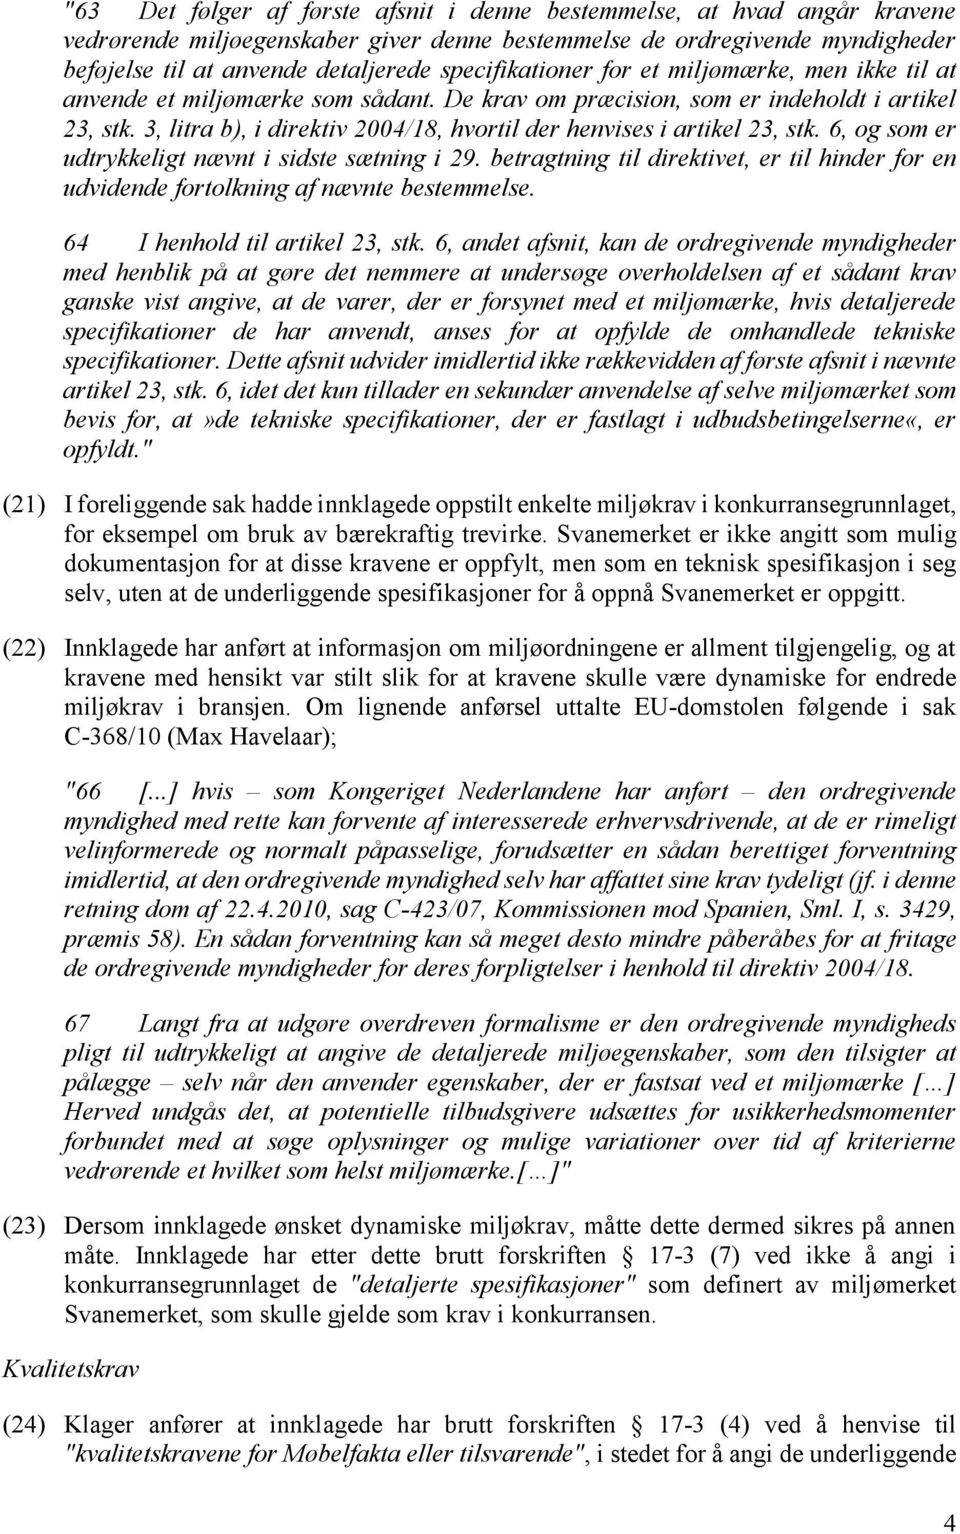 3, litra b), i direktiv 2004/18, hvortil der henvises i artikel 23, stk. 6, og som er udtrykkeligt nævnt i sidste sætning i 29.